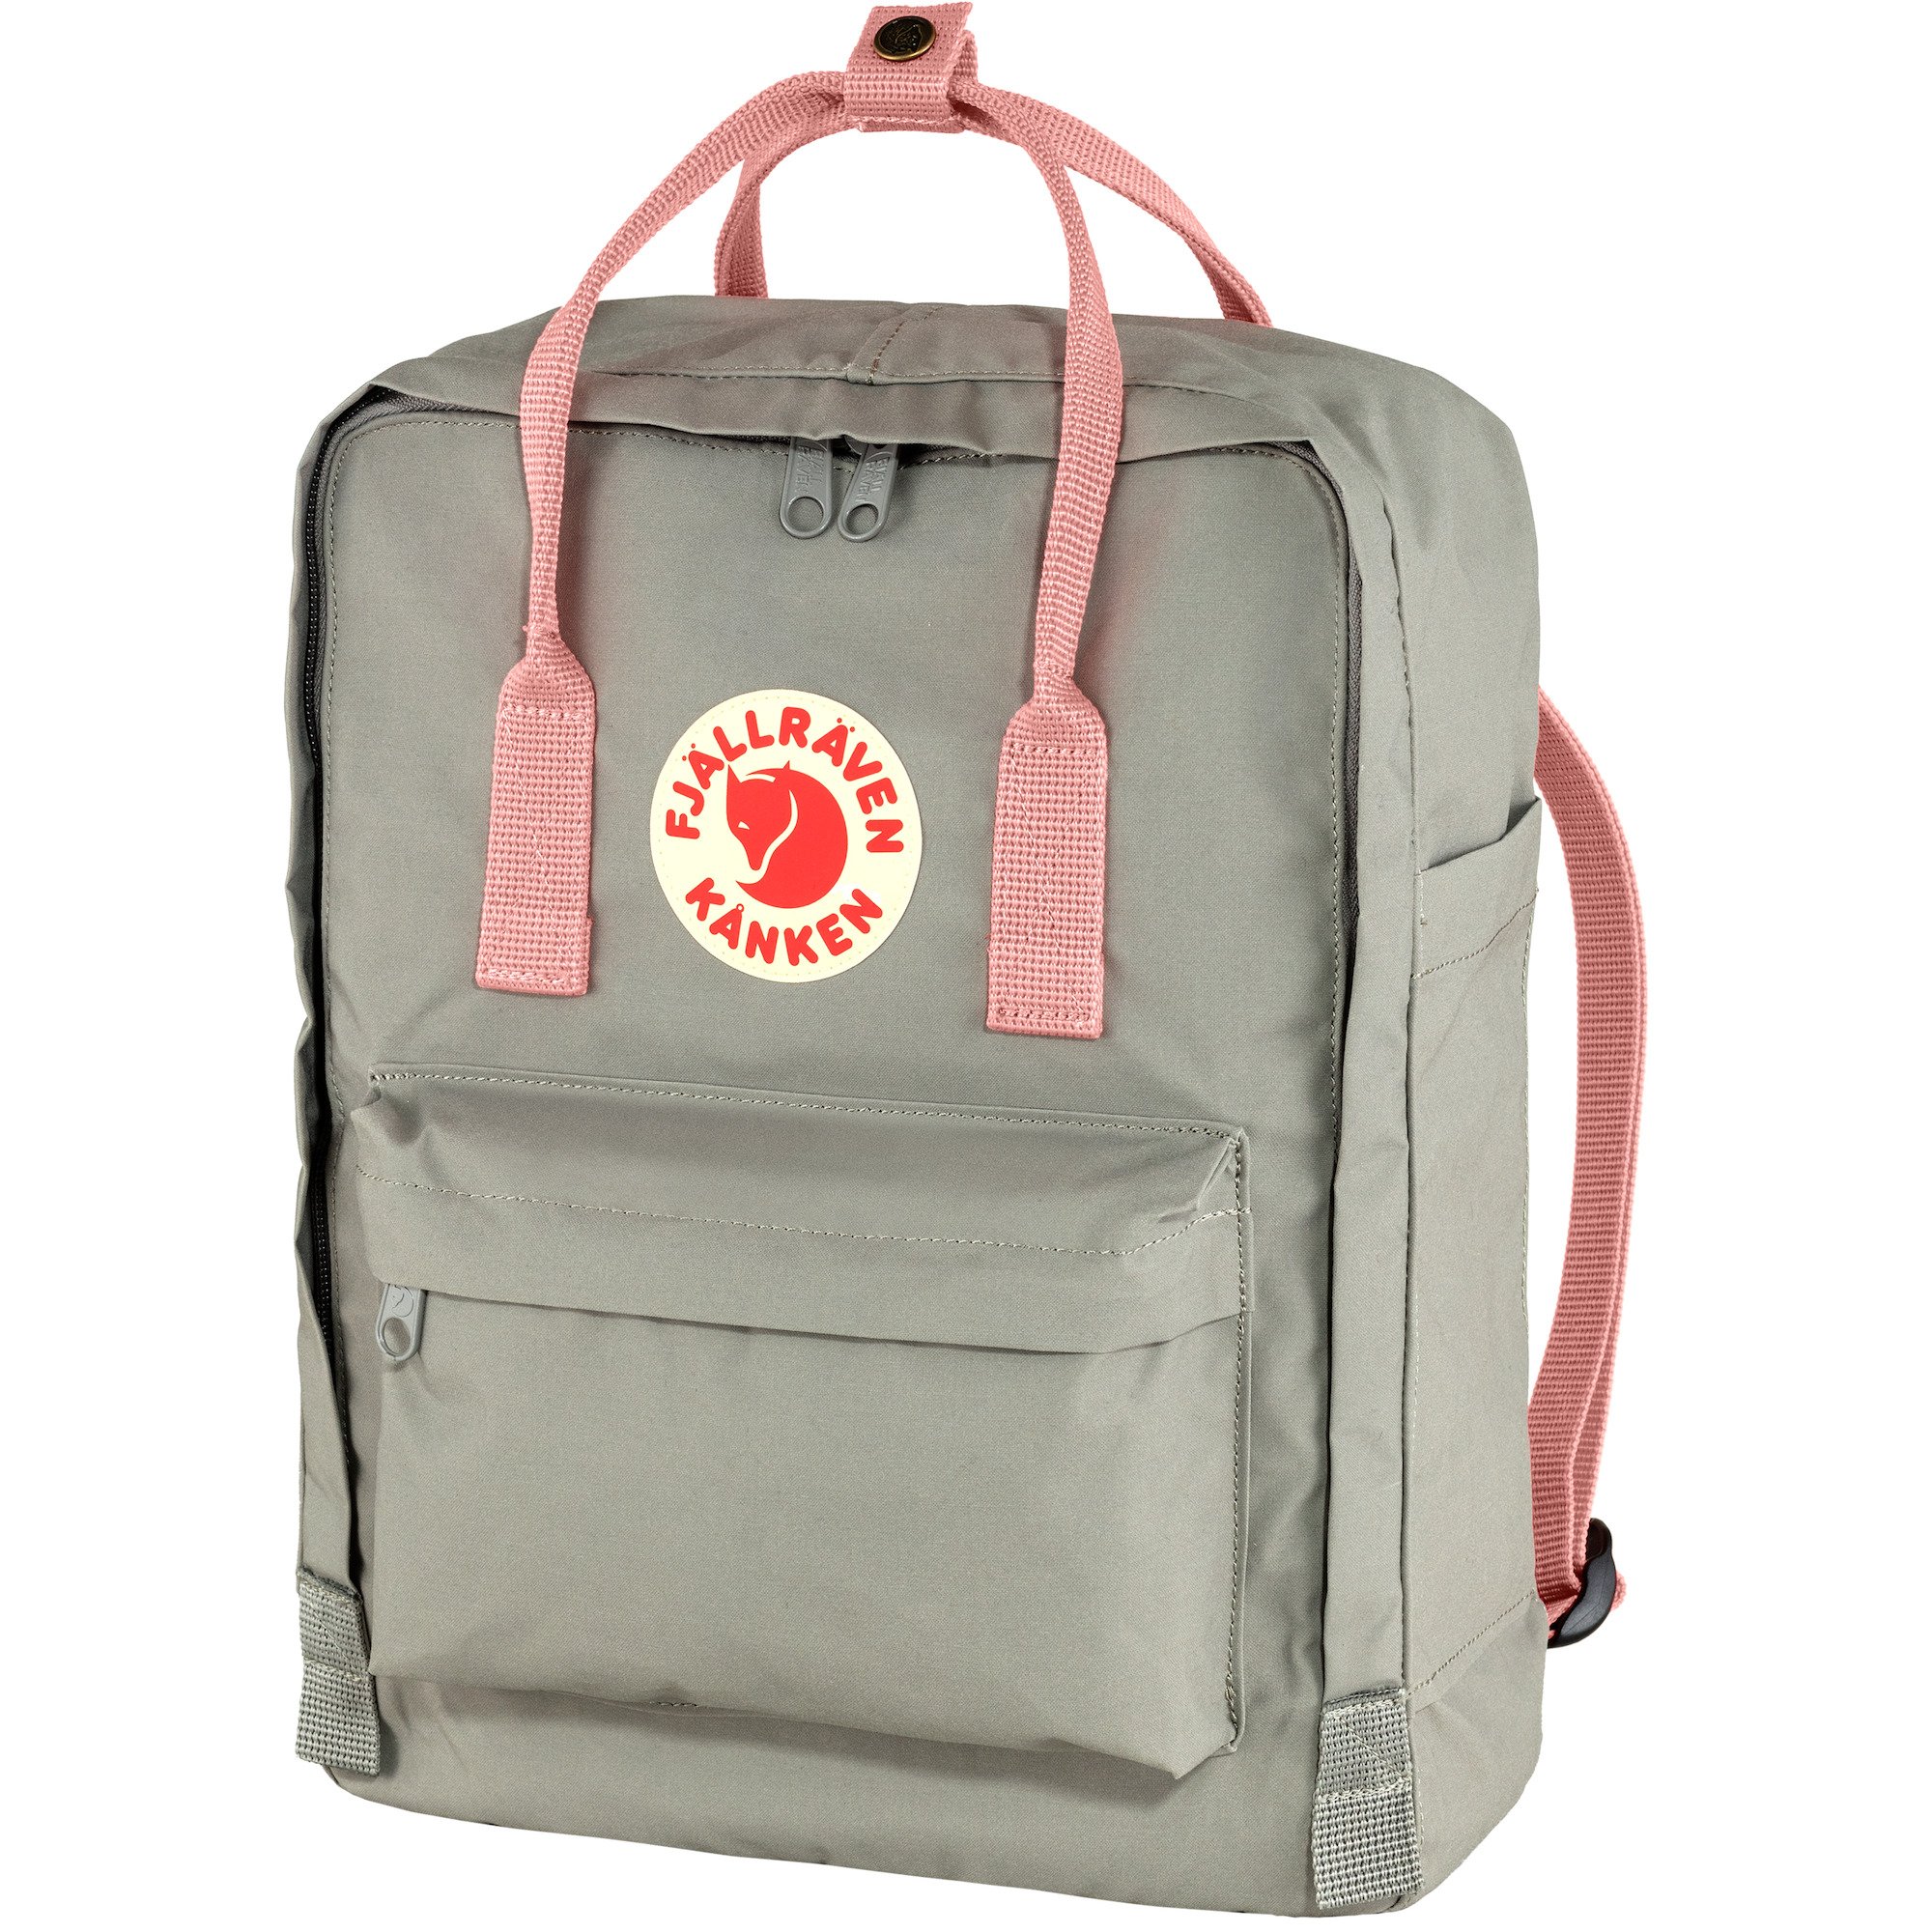 Unisex Backpack Fjallraven Kanken Travel Shoulder School Bags 7L/16L/20L Casual 